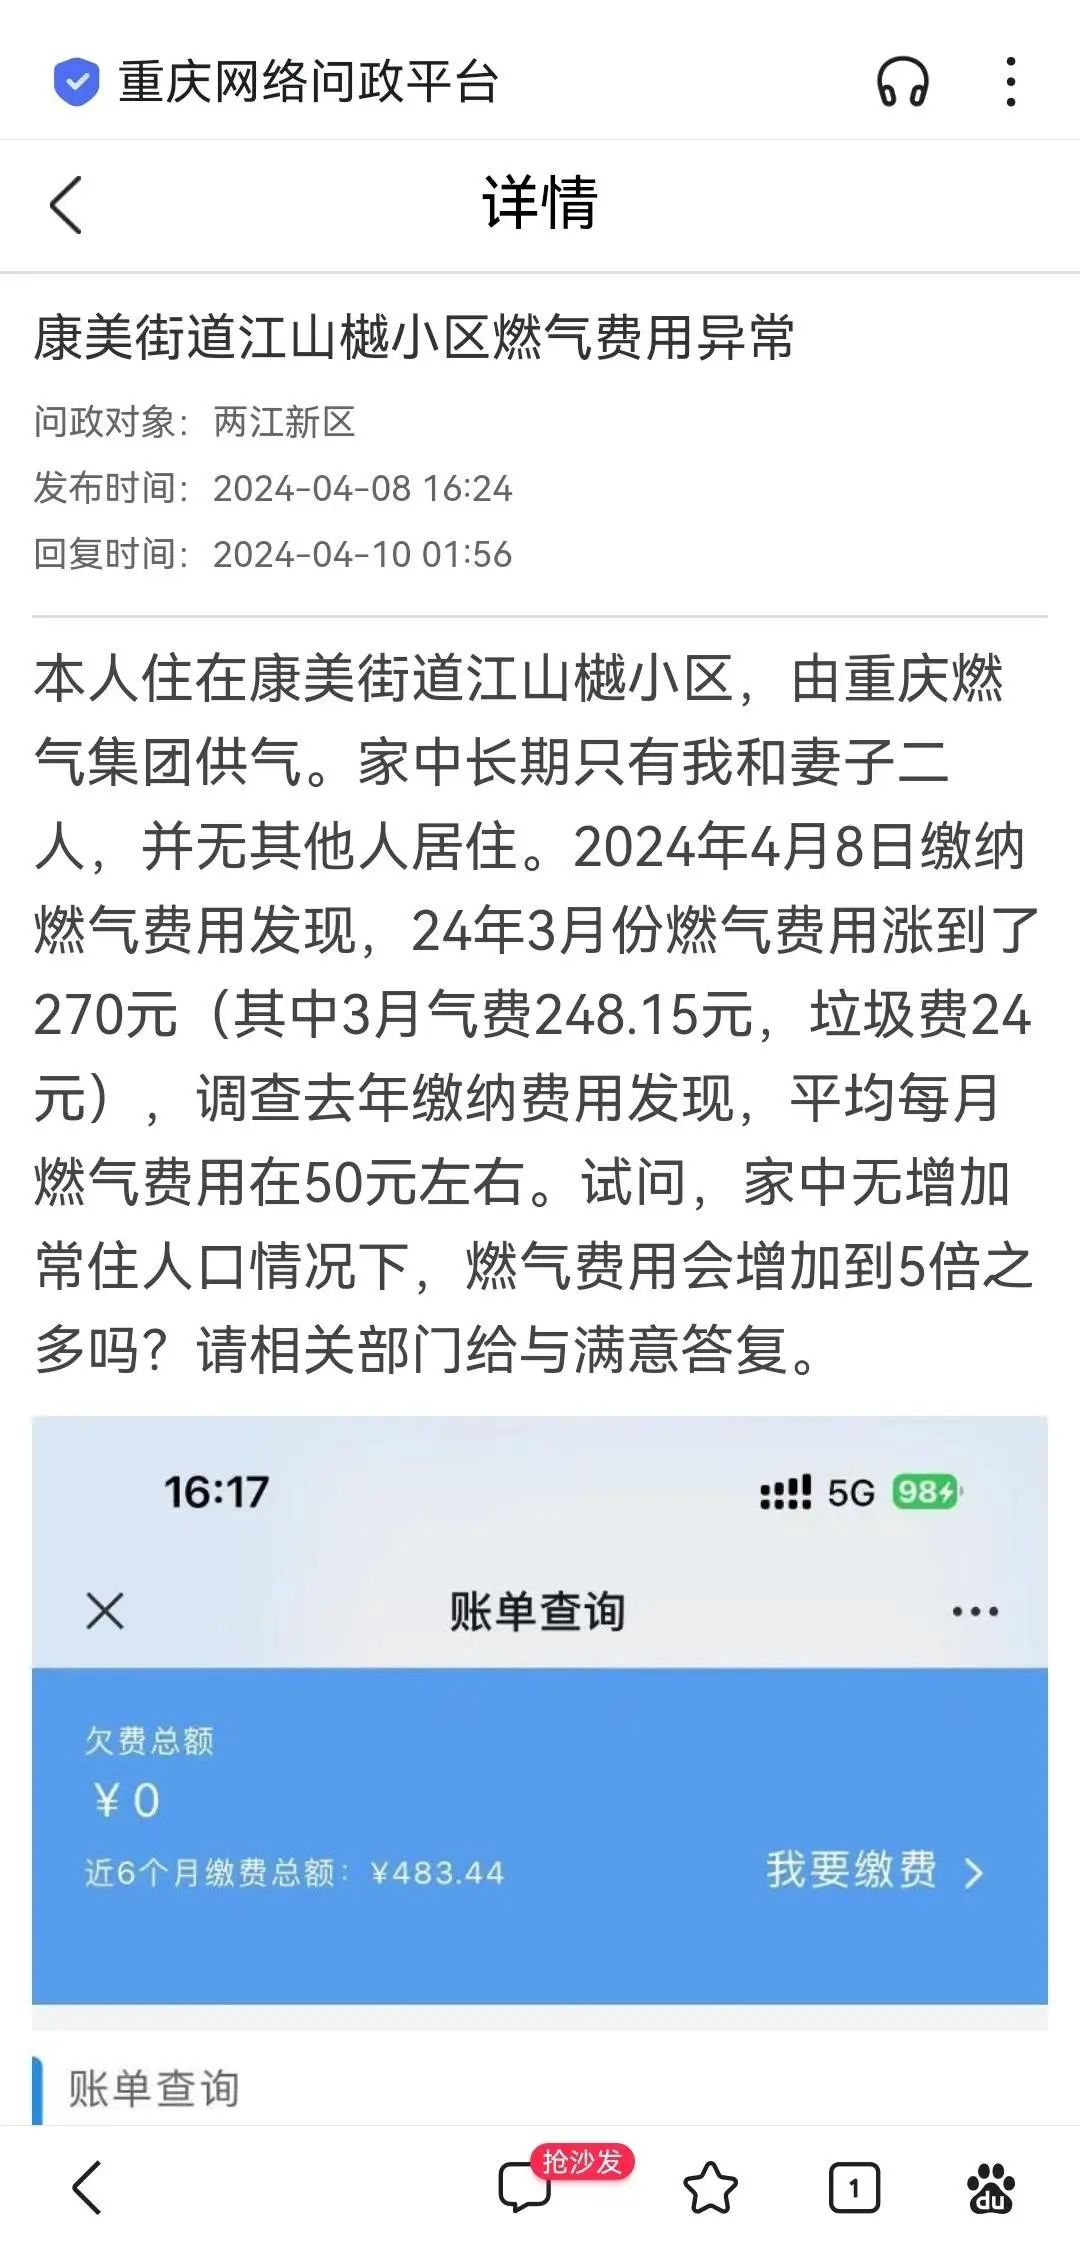 市民通过重庆网络问政平台投诉燃气费用较以往增加了不少。